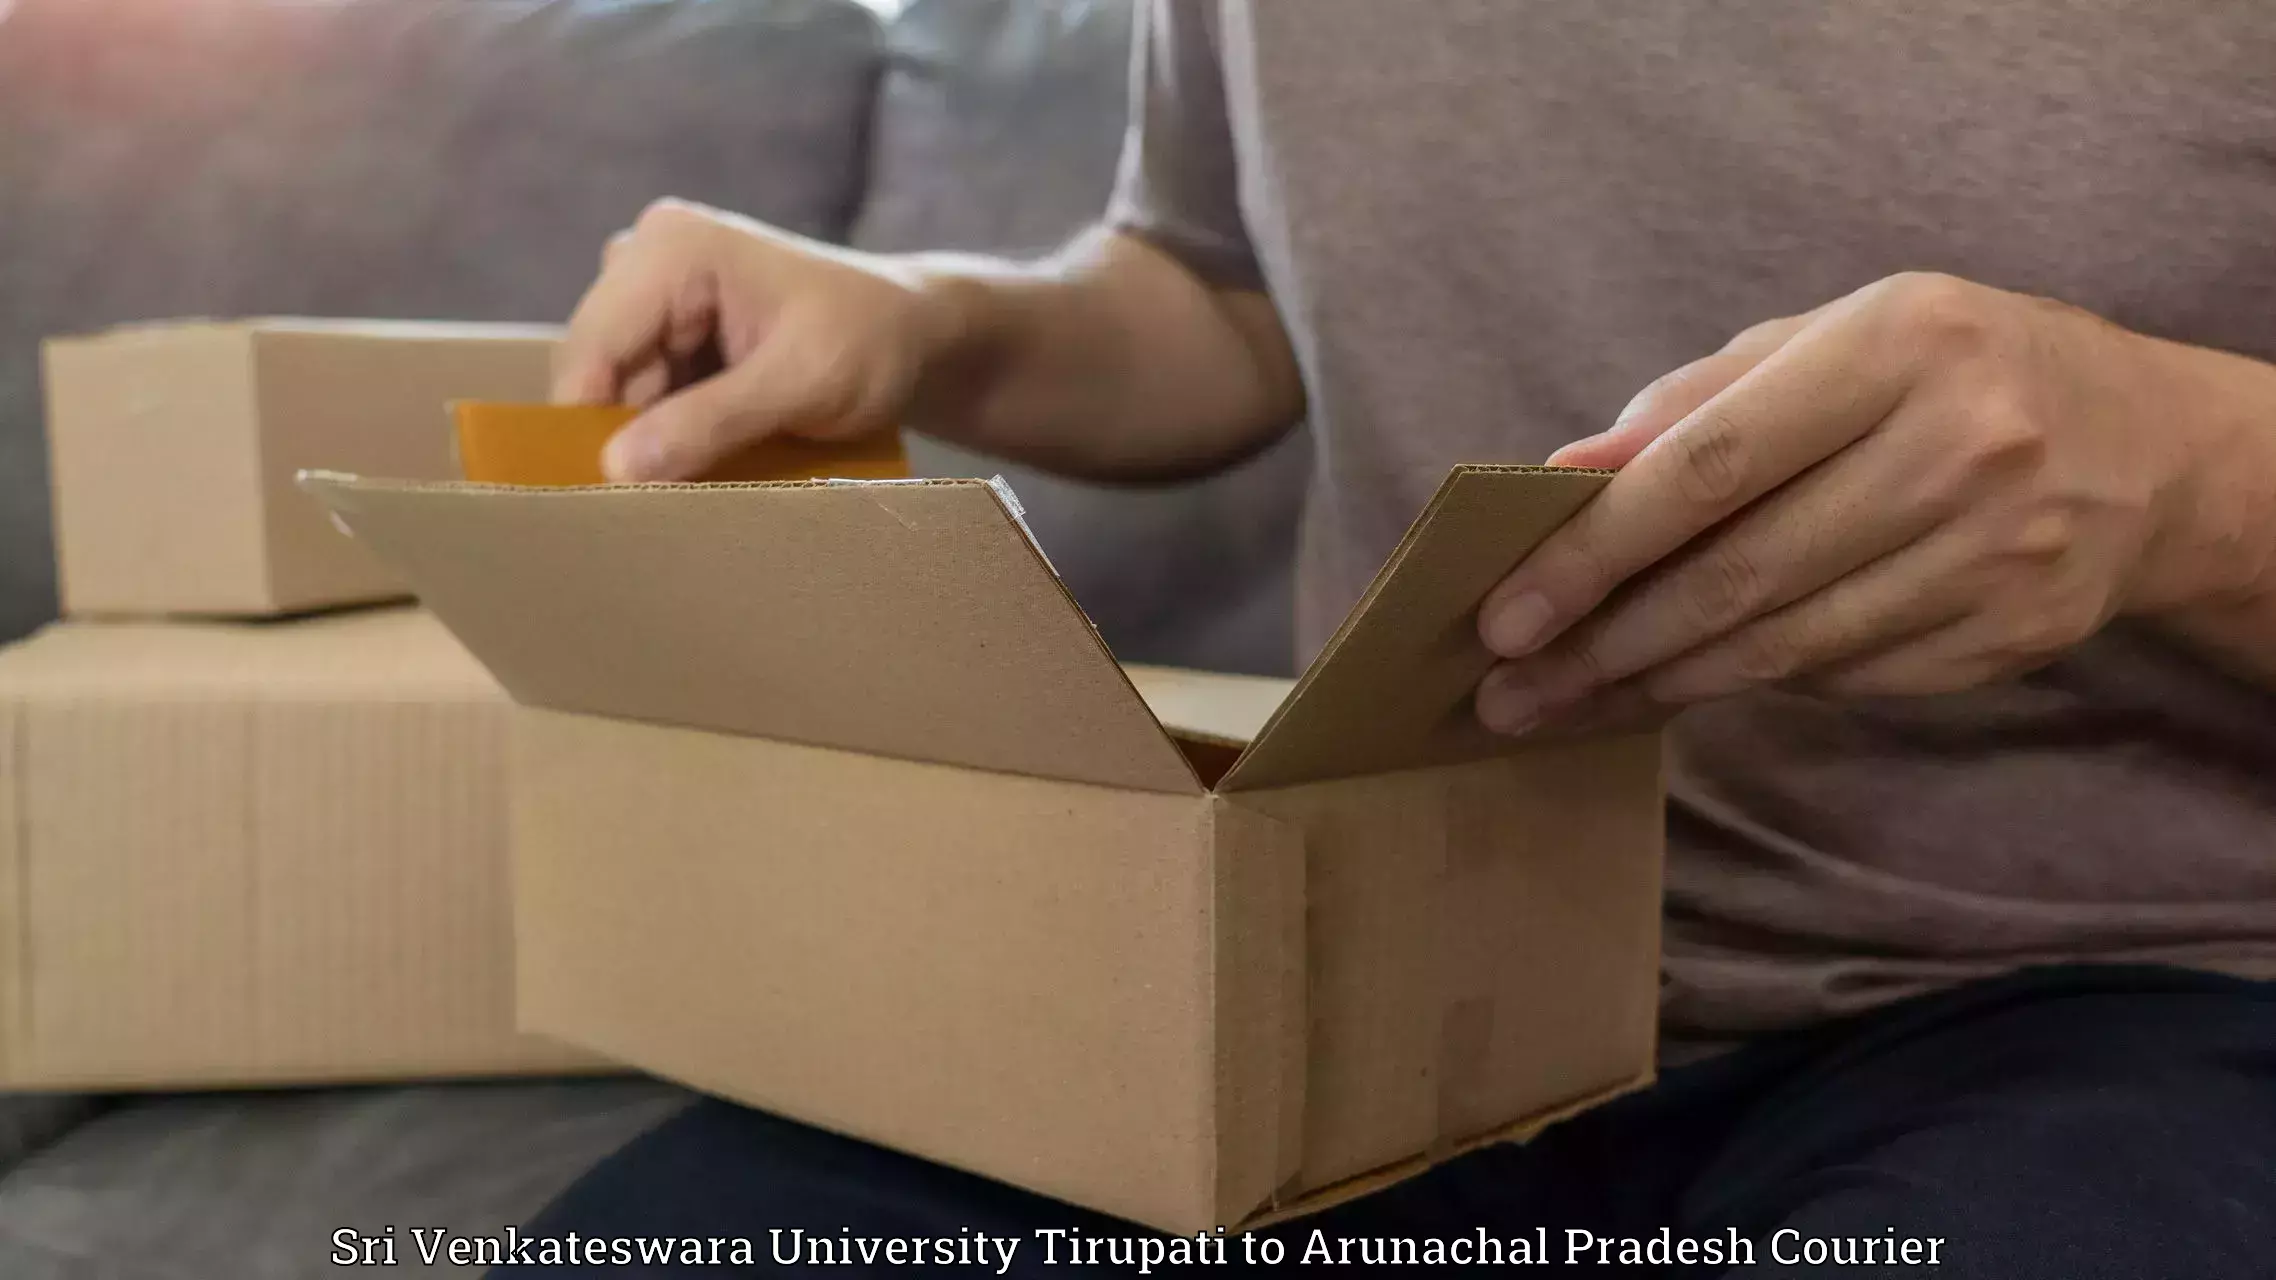 Global parcel delivery Sri Venkateswara University Tirupati to Arunachal Pradesh